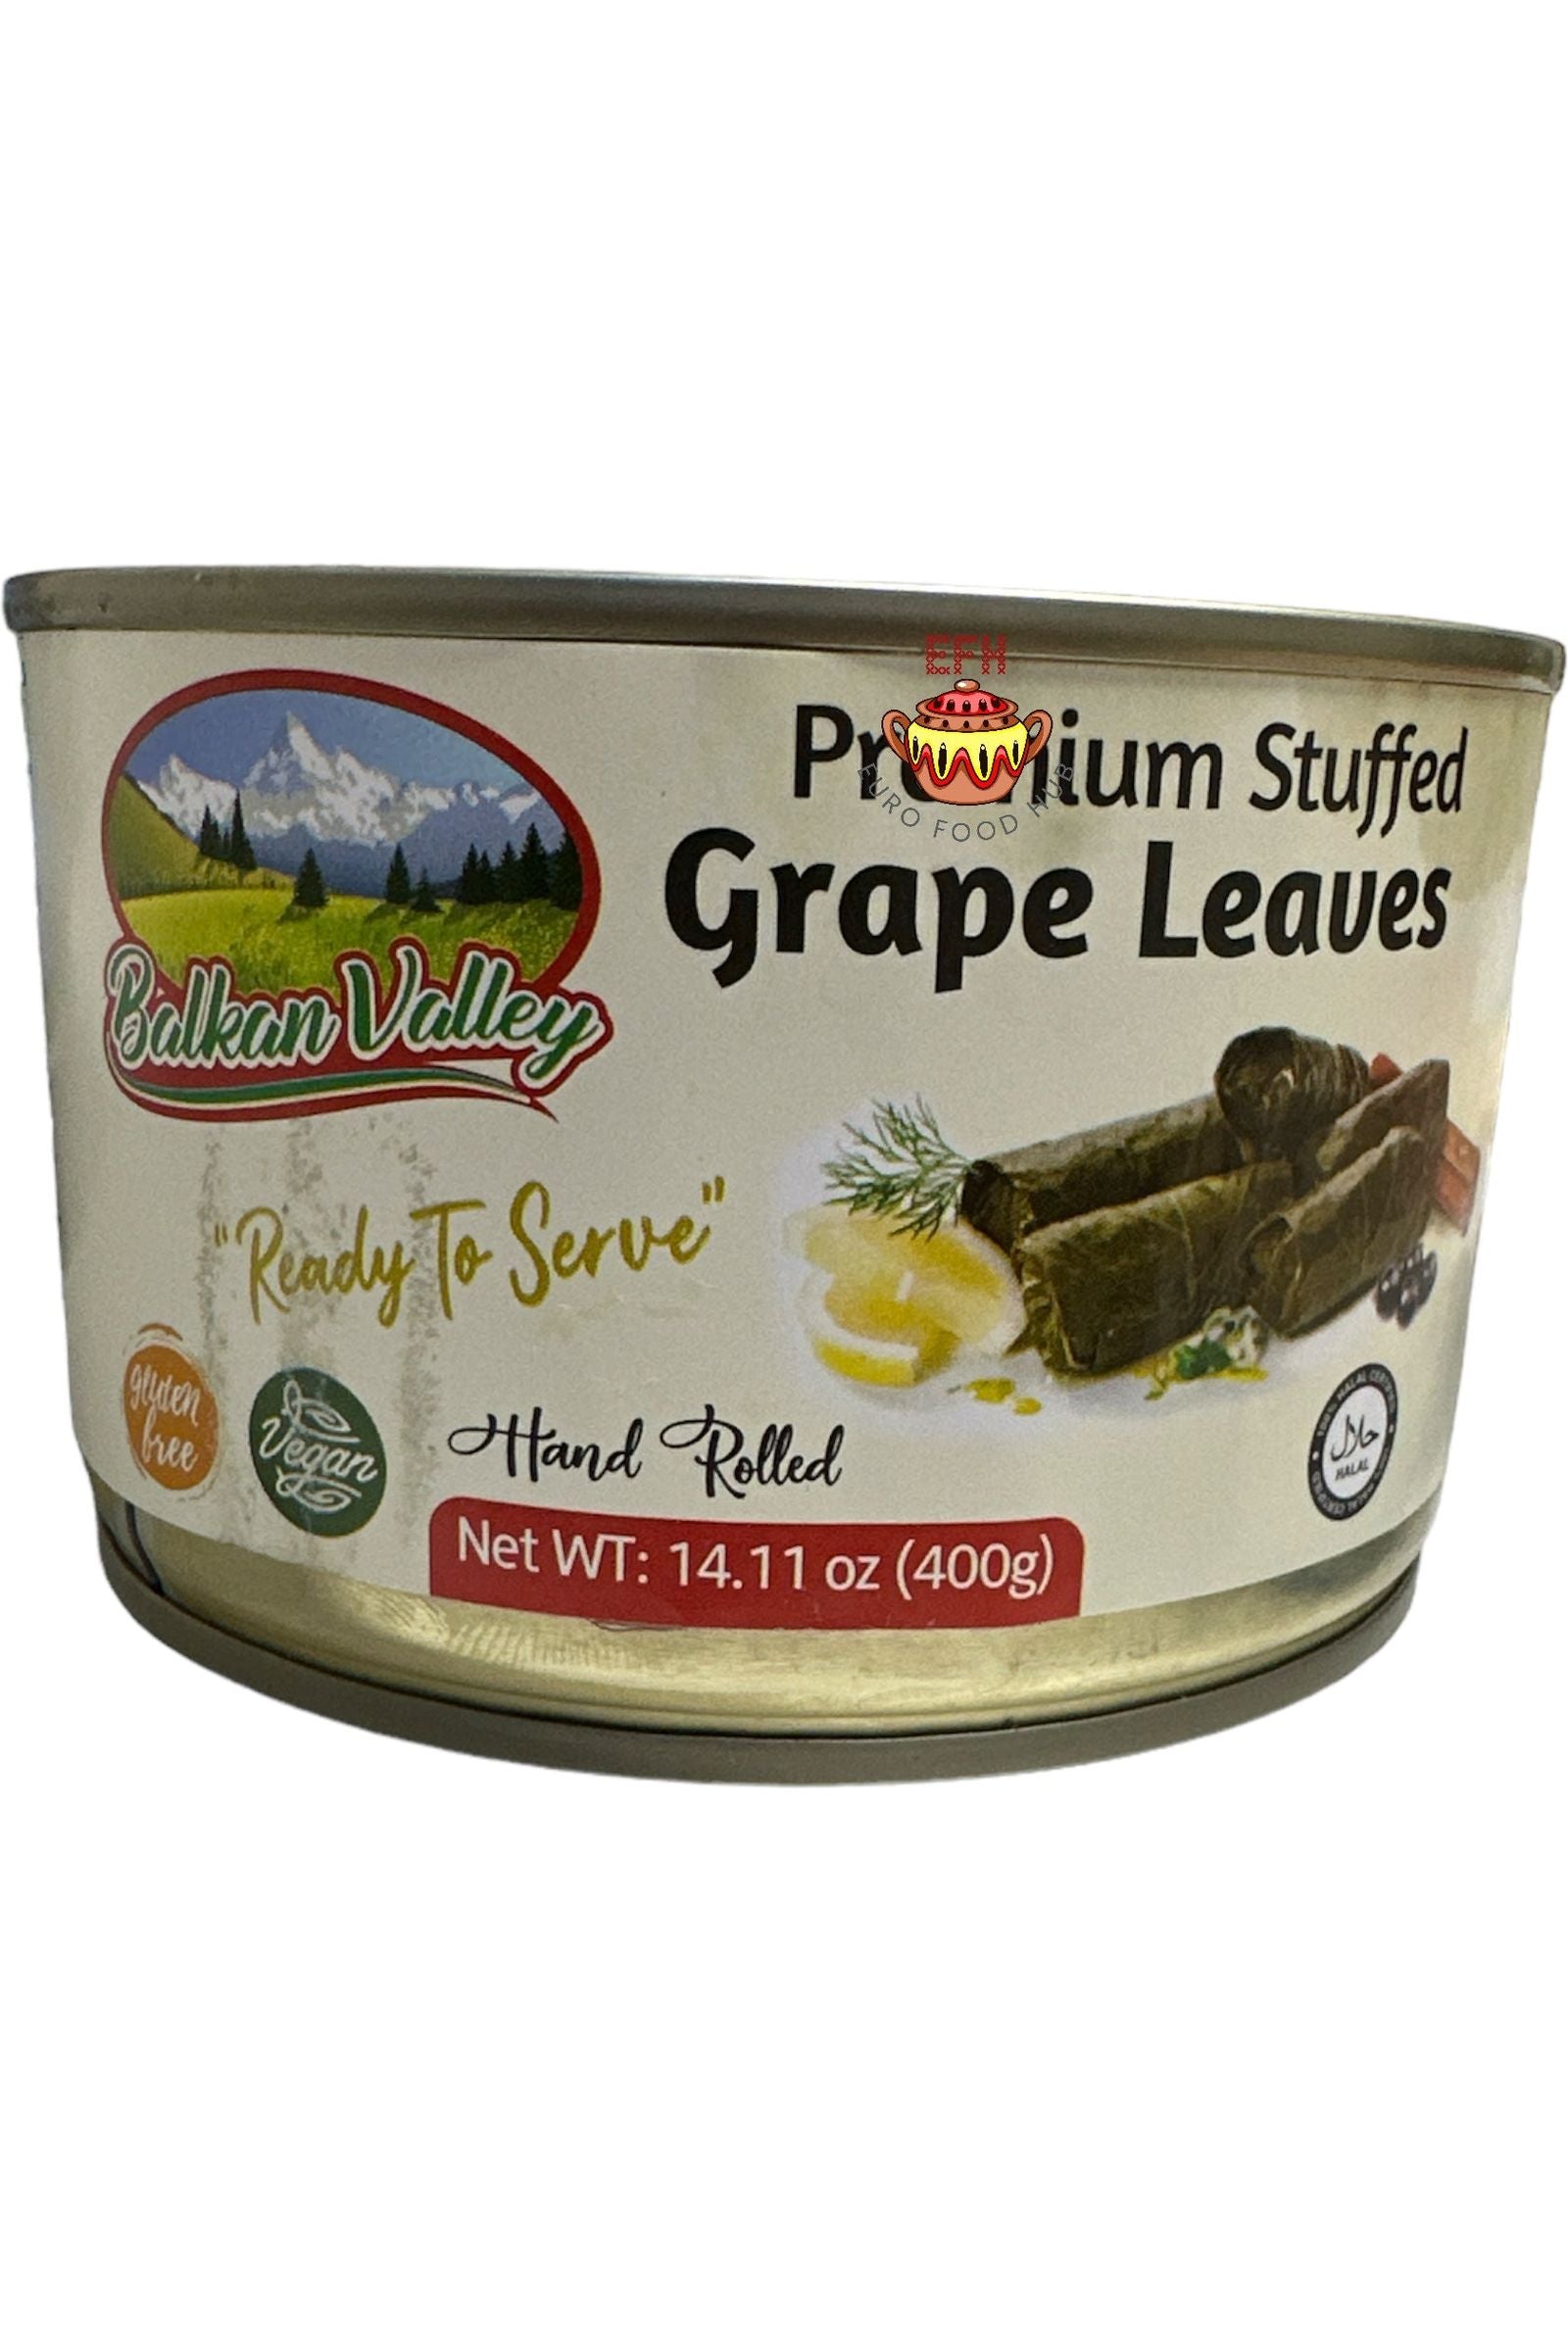 Premium Stuffed Grape Leaves - Balkan Valley